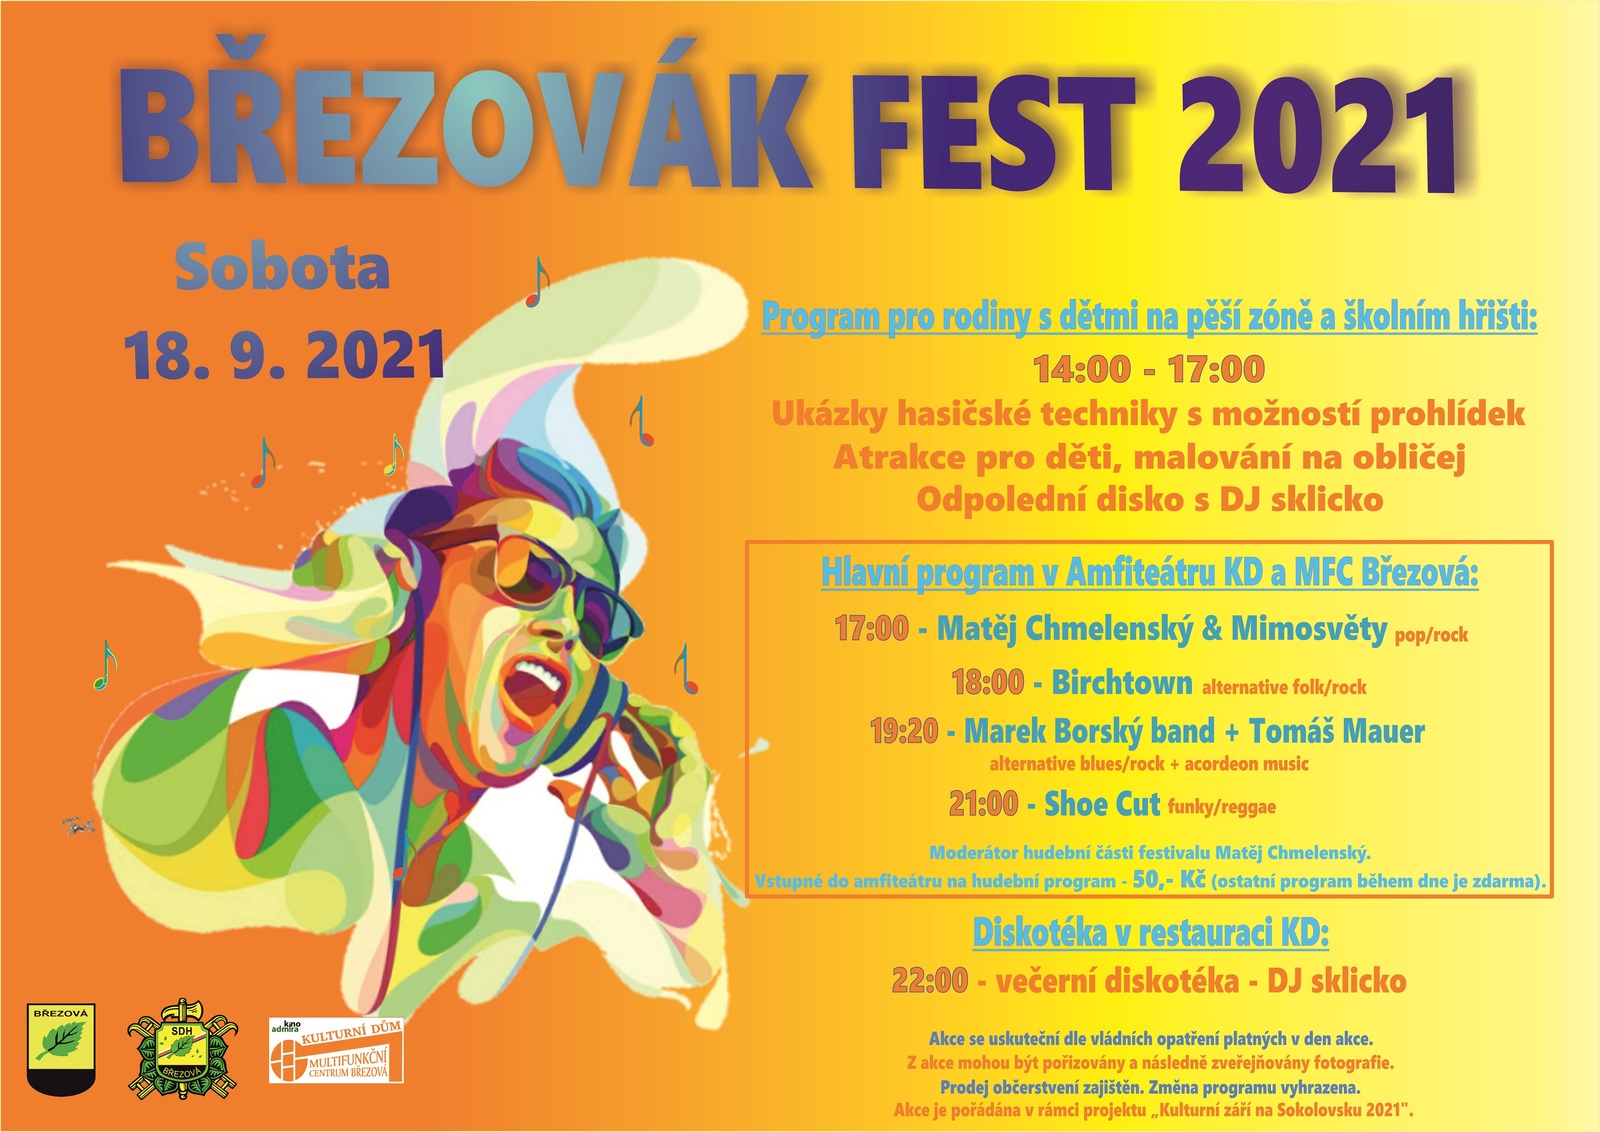 BREZOVAK FEST 2021 - final.jpg